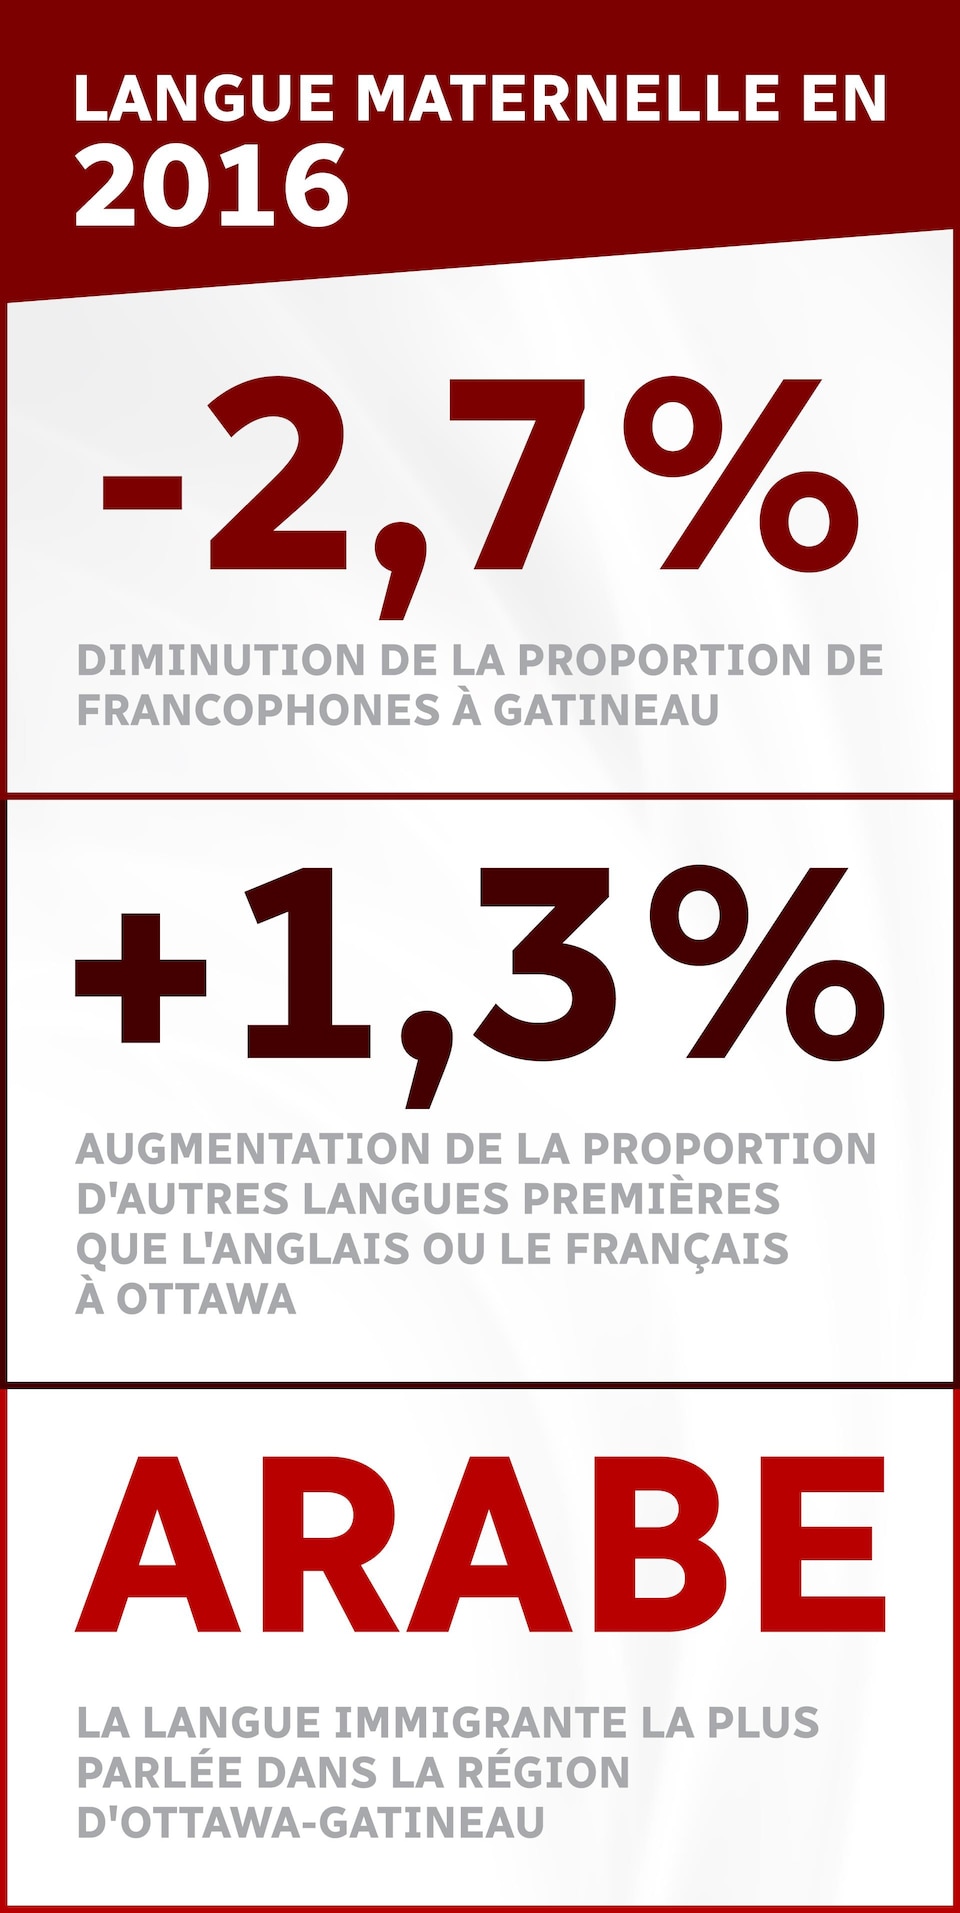 Statistiques sur la langue maternelle en 2016 à Ottawa et Gatineau.

 - 2, 7 %

Diminution de la proportion de francophones à Gatineau


+ 1,3 % 
Augmentation de la proportion d'autres langues premières que l'anglais ou le français à Ottawa

Arabe 
La langue immigrante la plus parlée dans la région d'Ottawa-Gatineau
